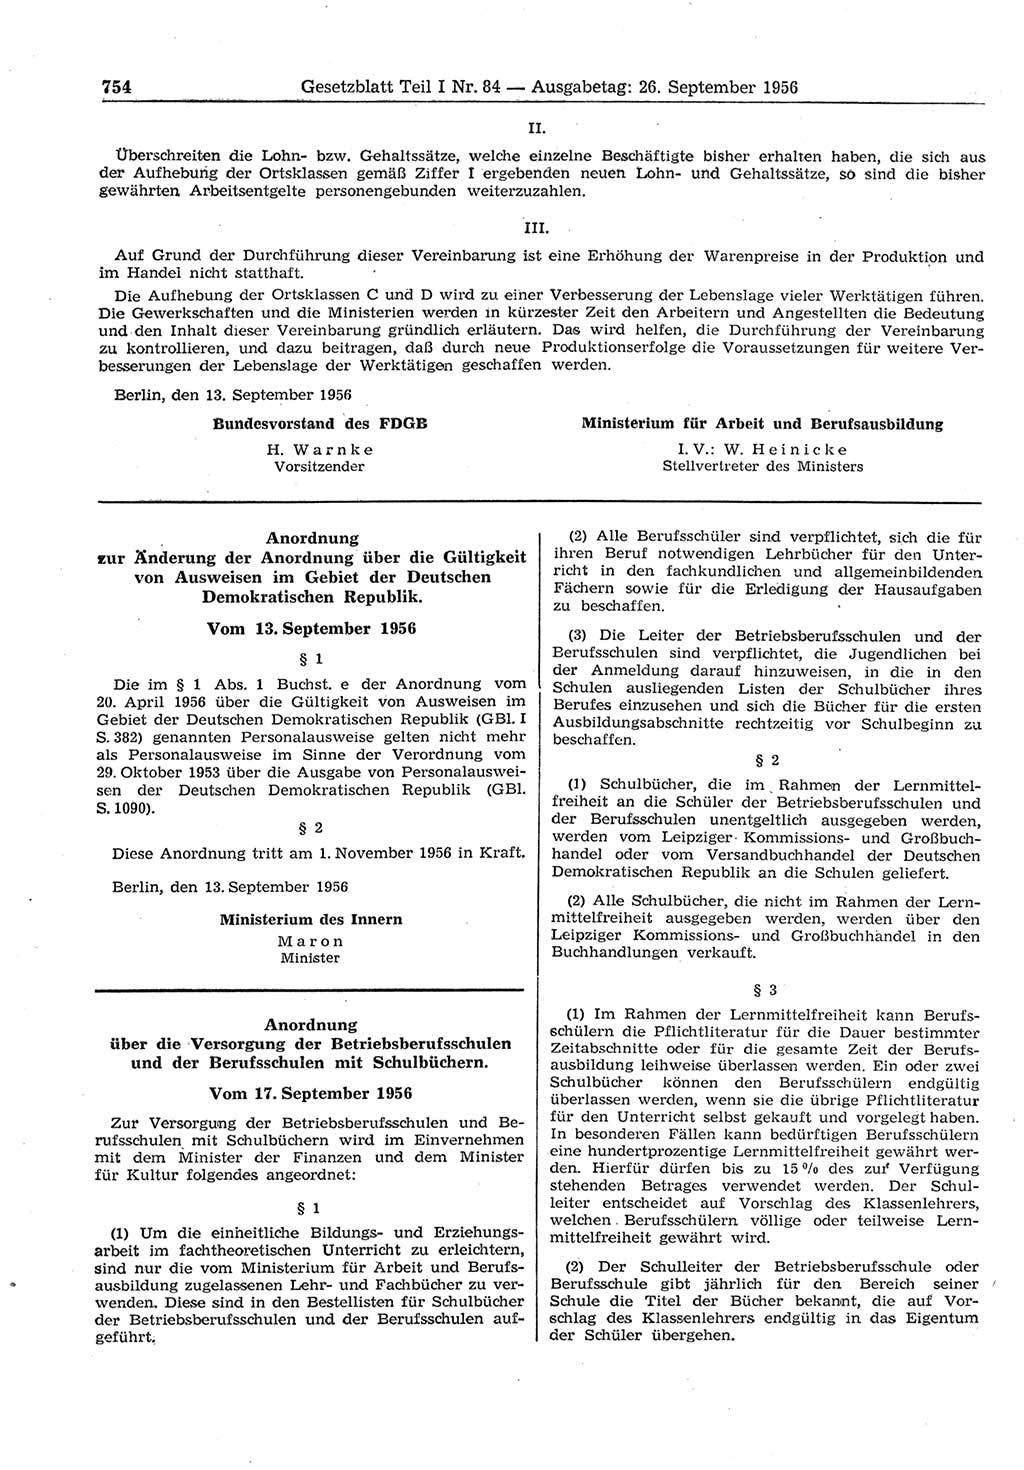 Gesetzblatt (GBl.) der Deutschen Demokratischen Republik (DDR) Teil Ⅰ 1956, Seite 754 (GBl. DDR Ⅰ 1956, S. 754)